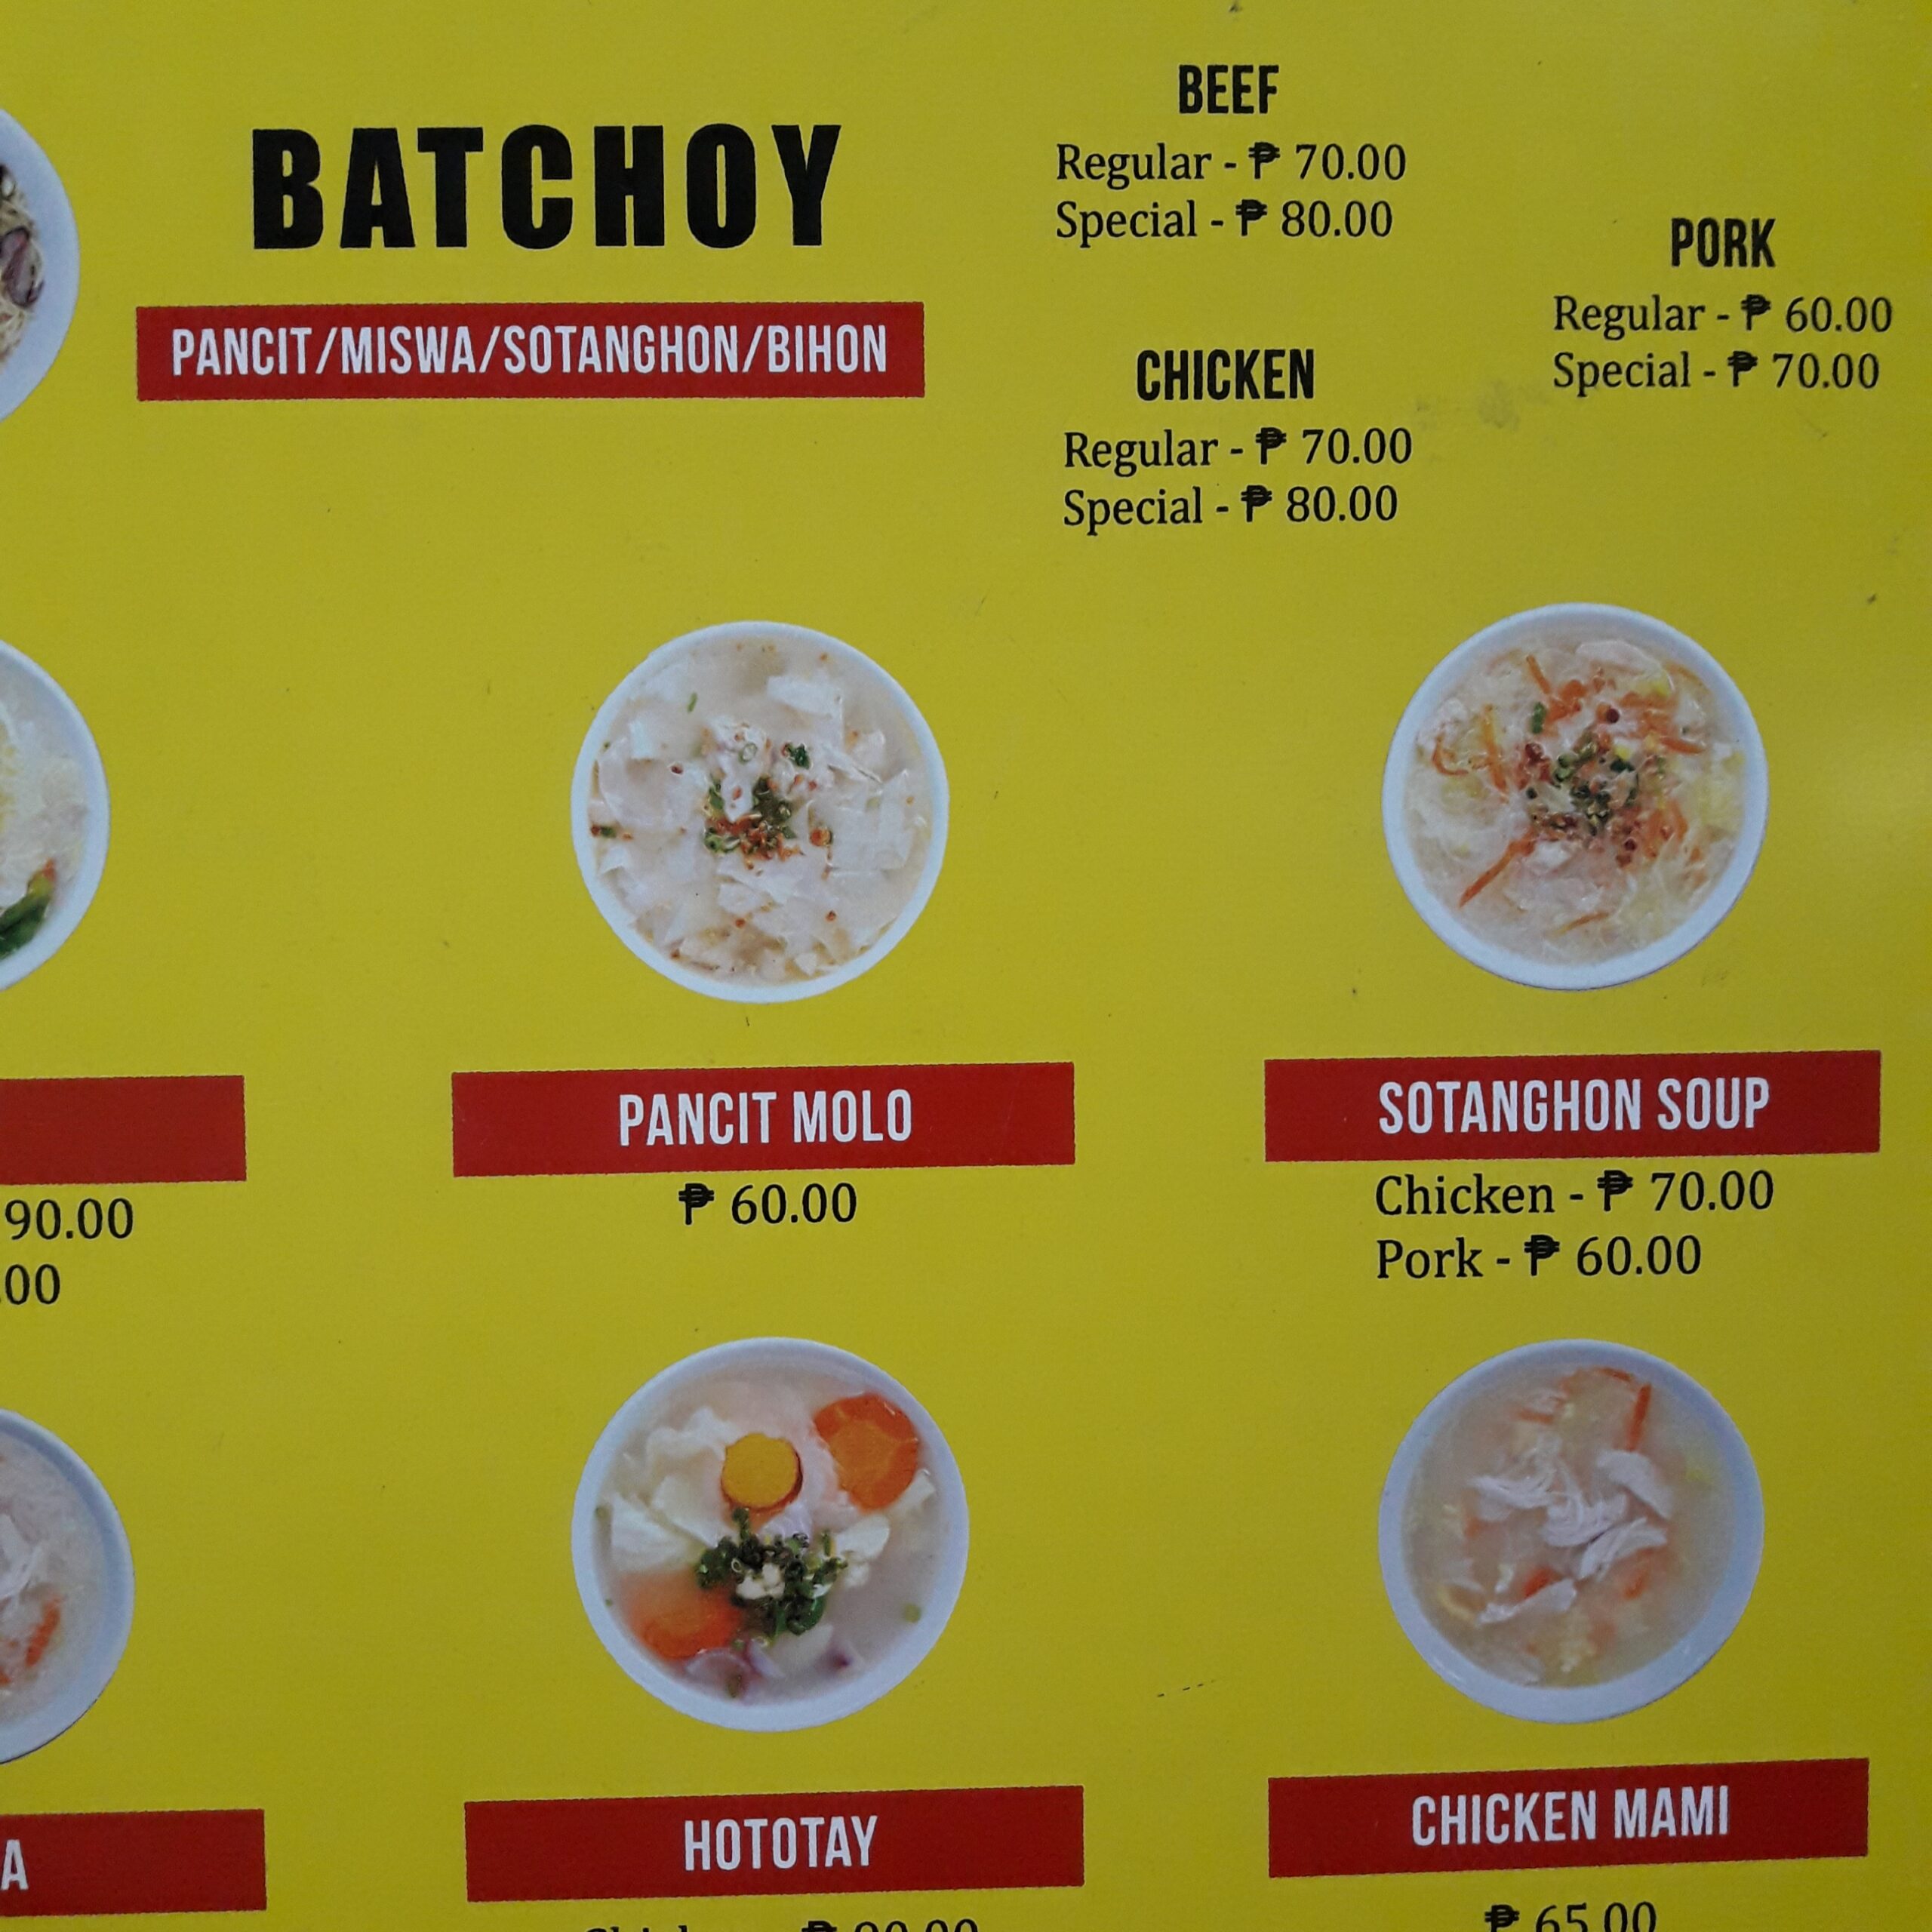 Wewins menu batchoy